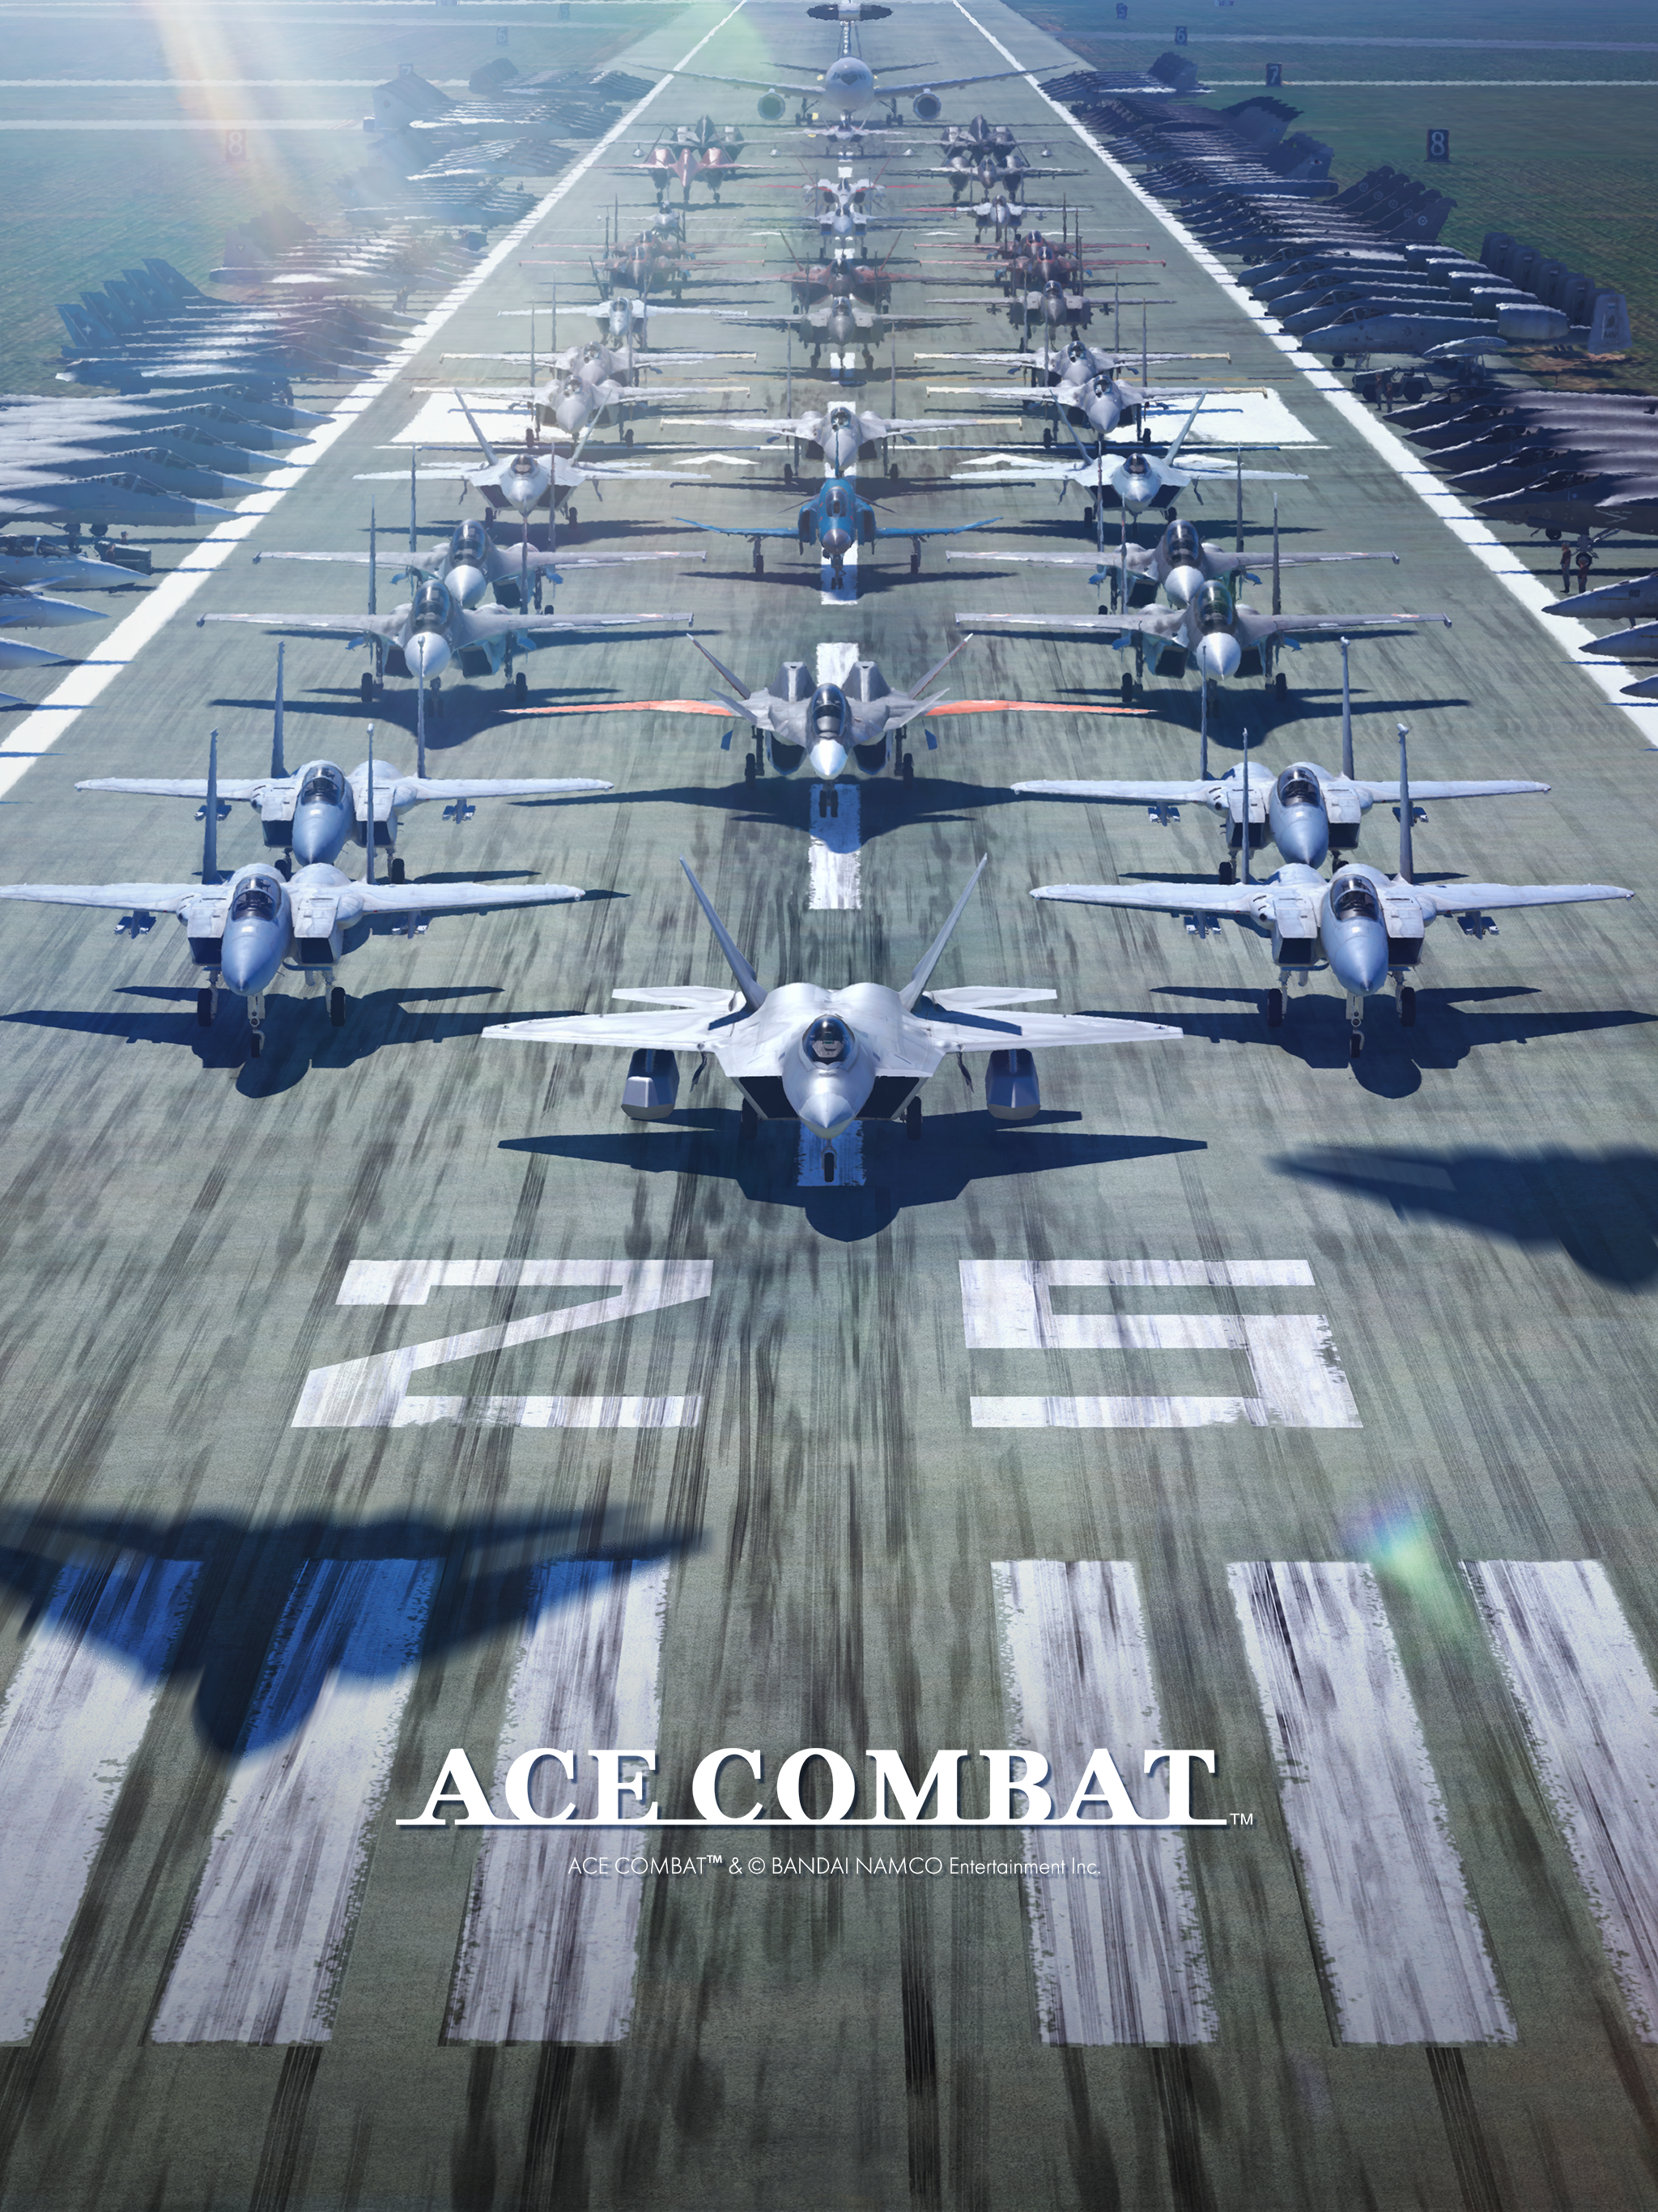 Ace Combat: Assault Horizon Legacy+ - Metacritic